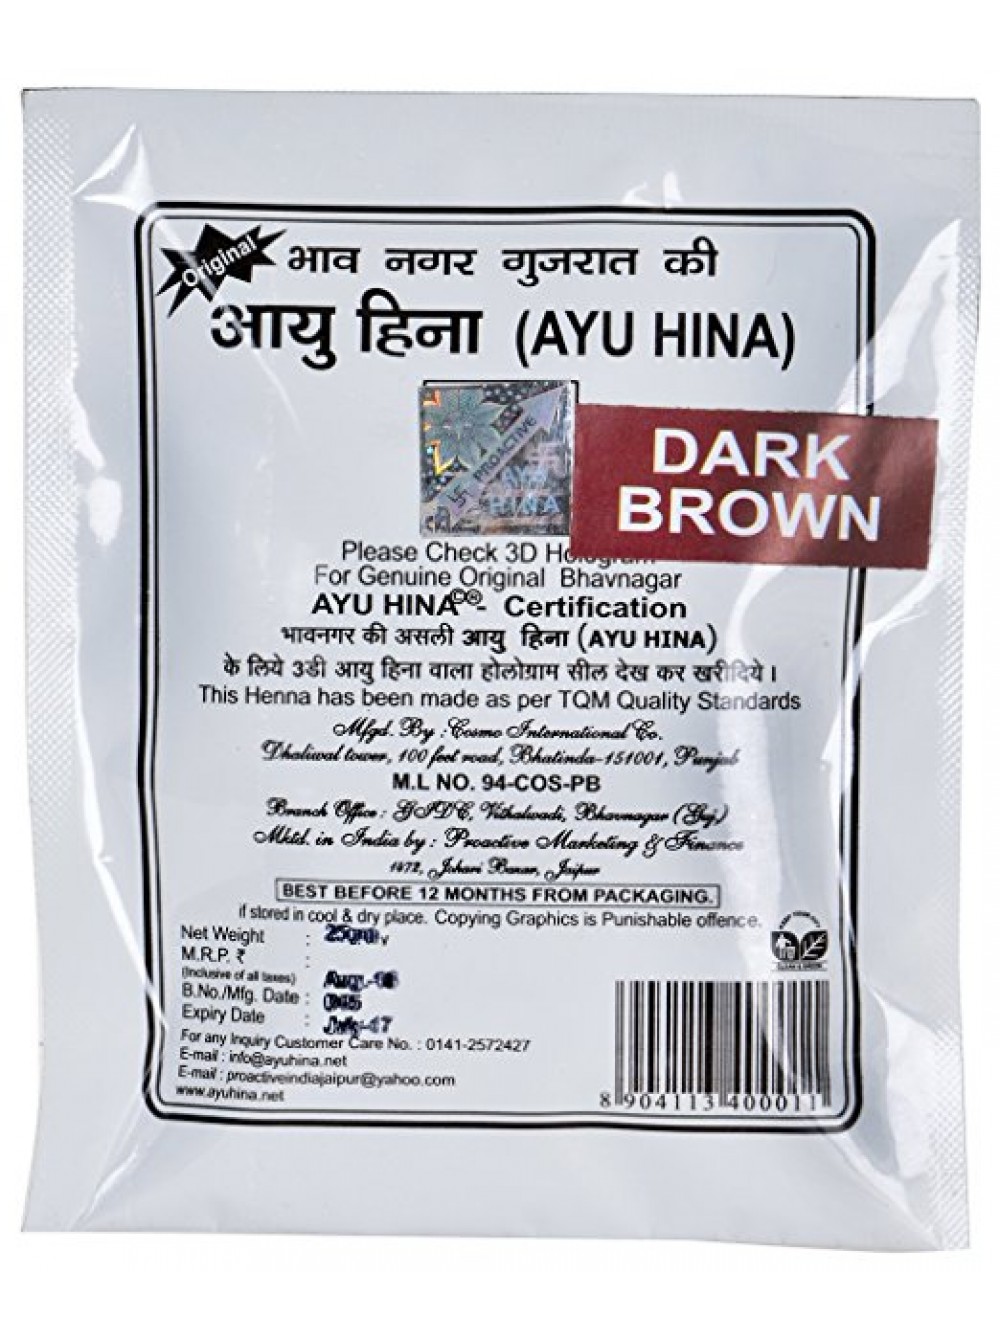 Хна для волос темно-коричневая, 25 г, производитель Аю Хина; Natural Hair Color Dark Brown Henna, 25 g, Ayu Hina